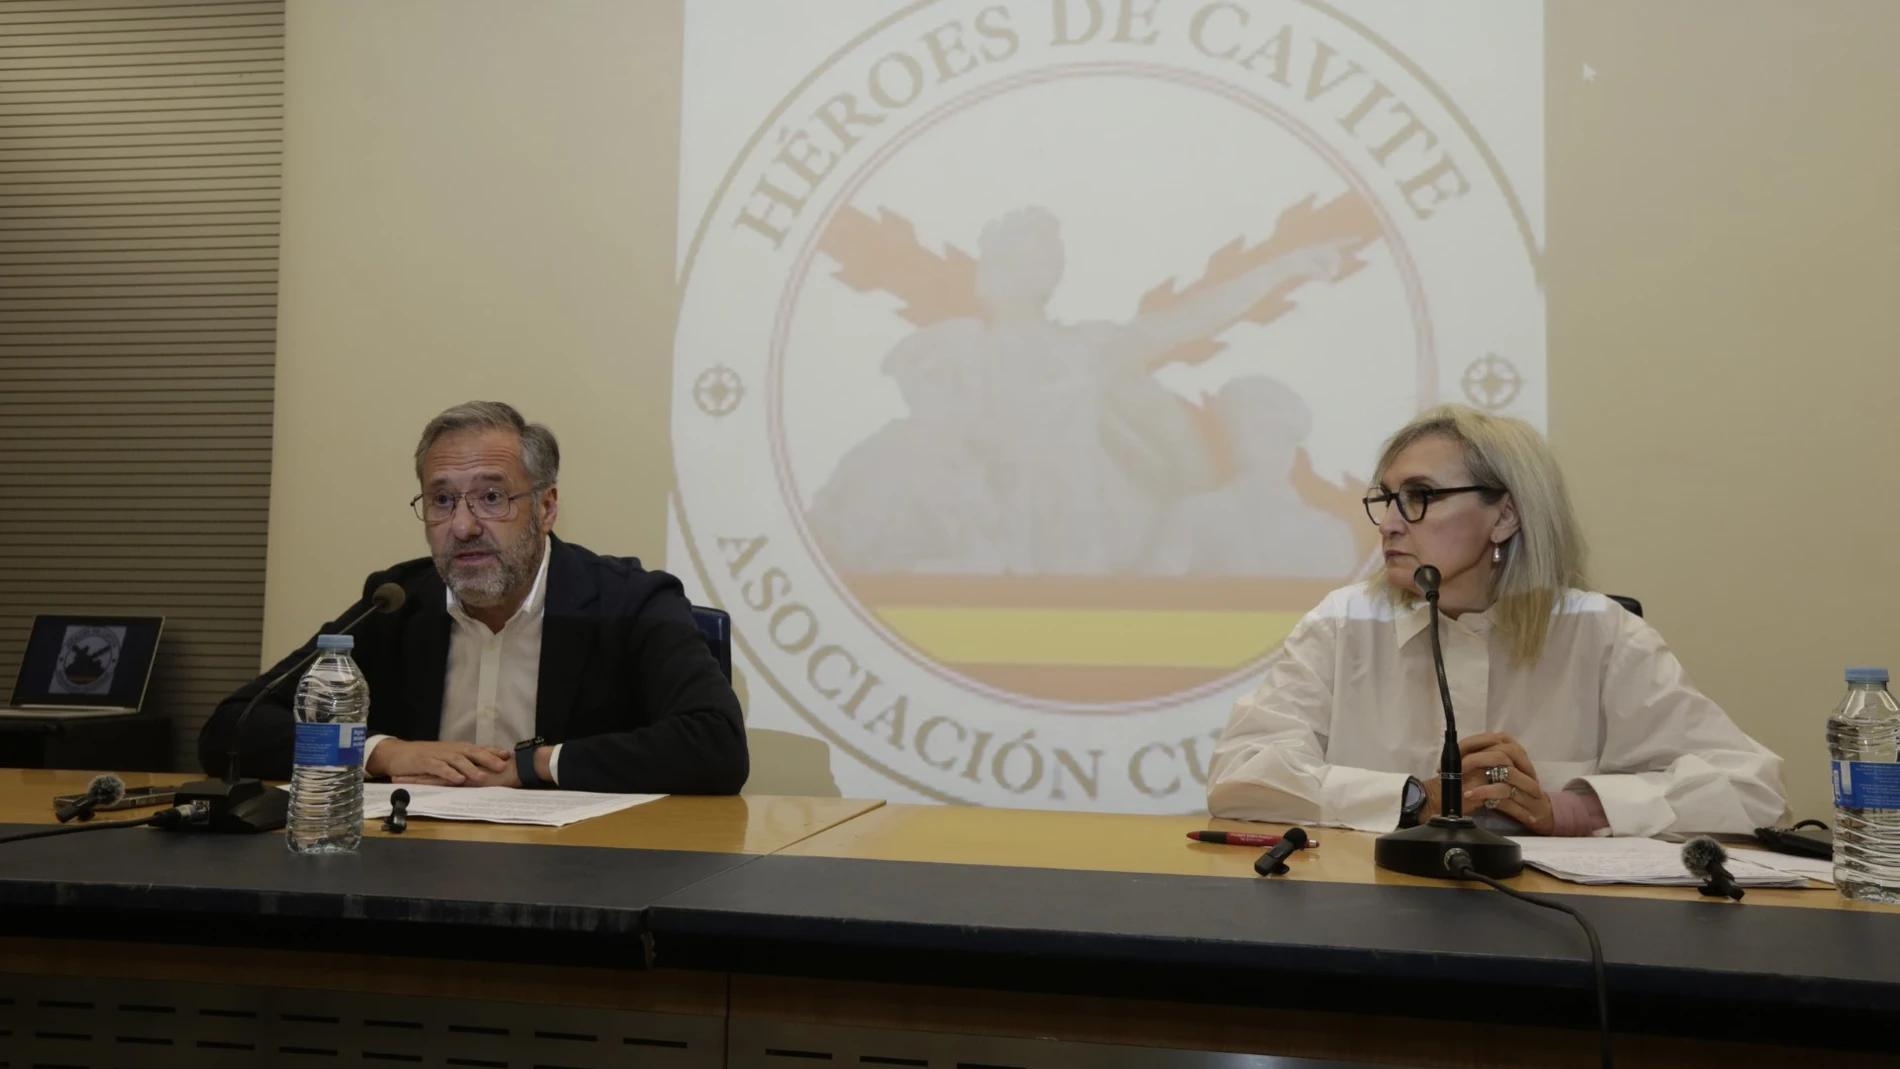 El presidente de las Cortes regionales, Carlos Pollán, inaugura la jornada